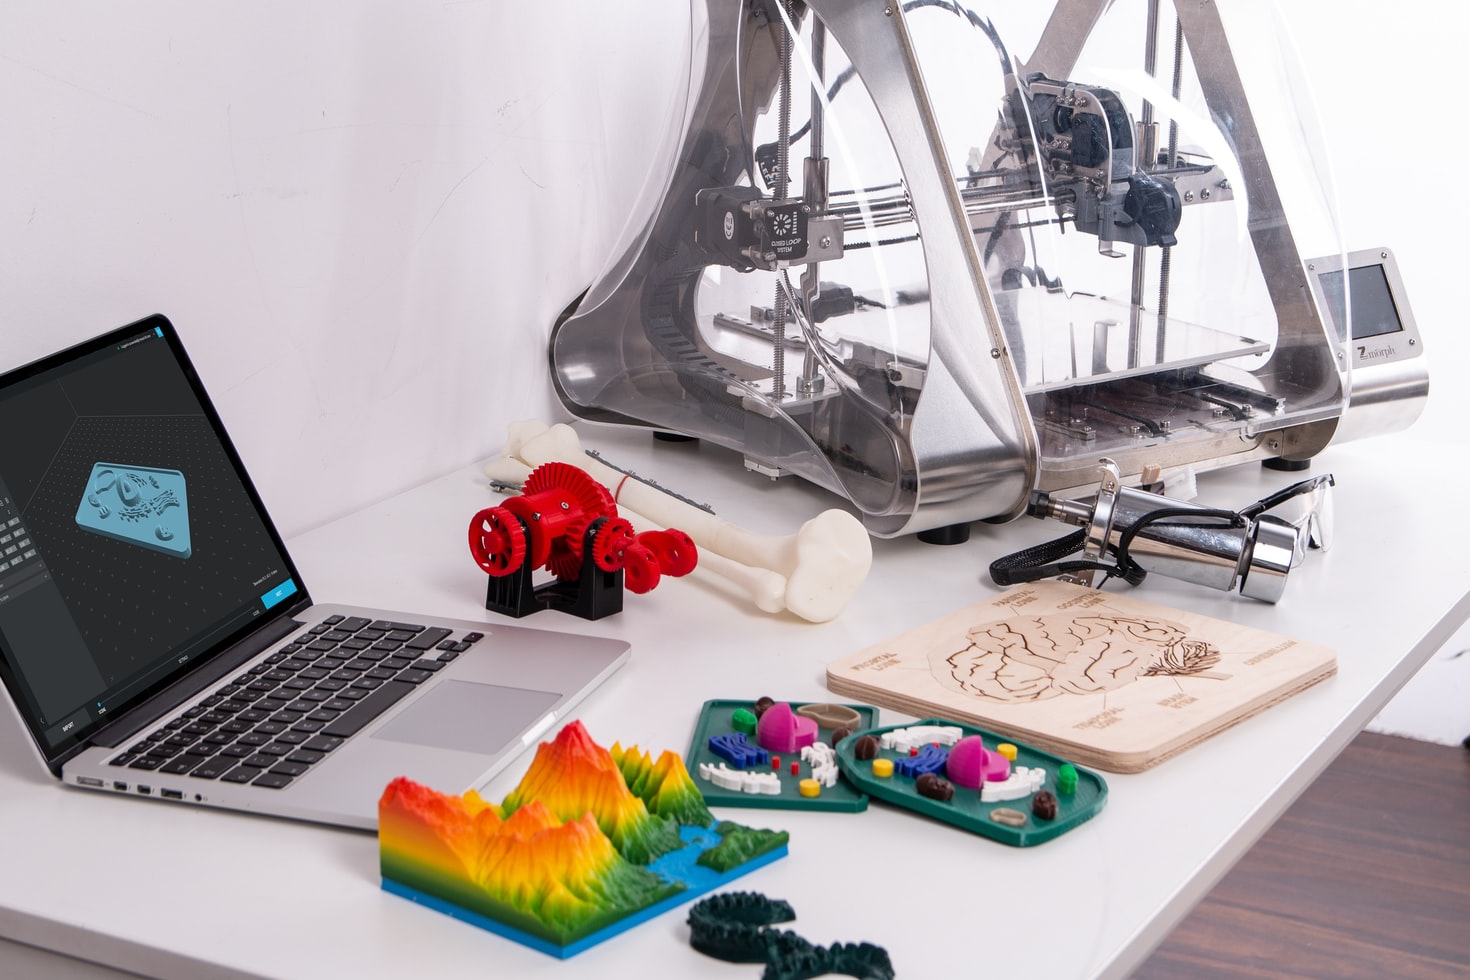 3D Printing Material